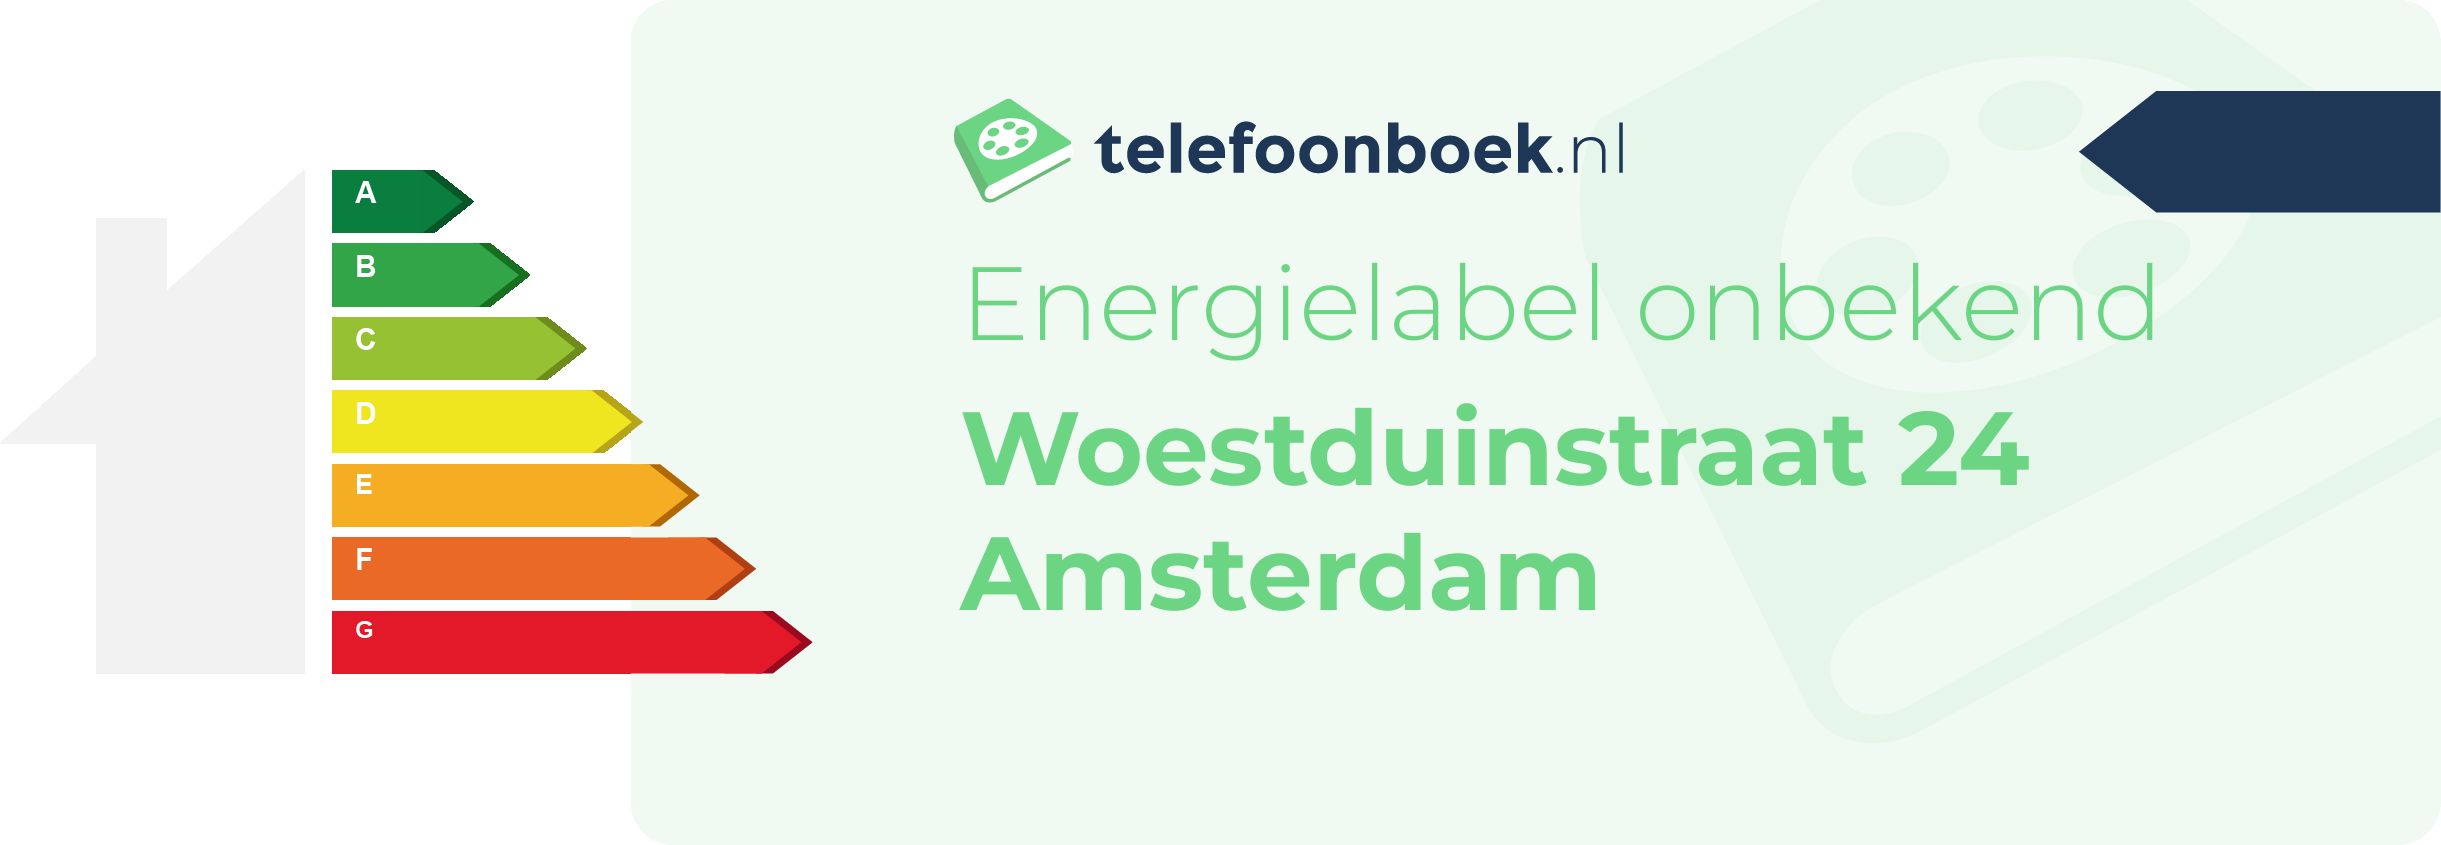 Energielabel Woestduinstraat 24 Amsterdam